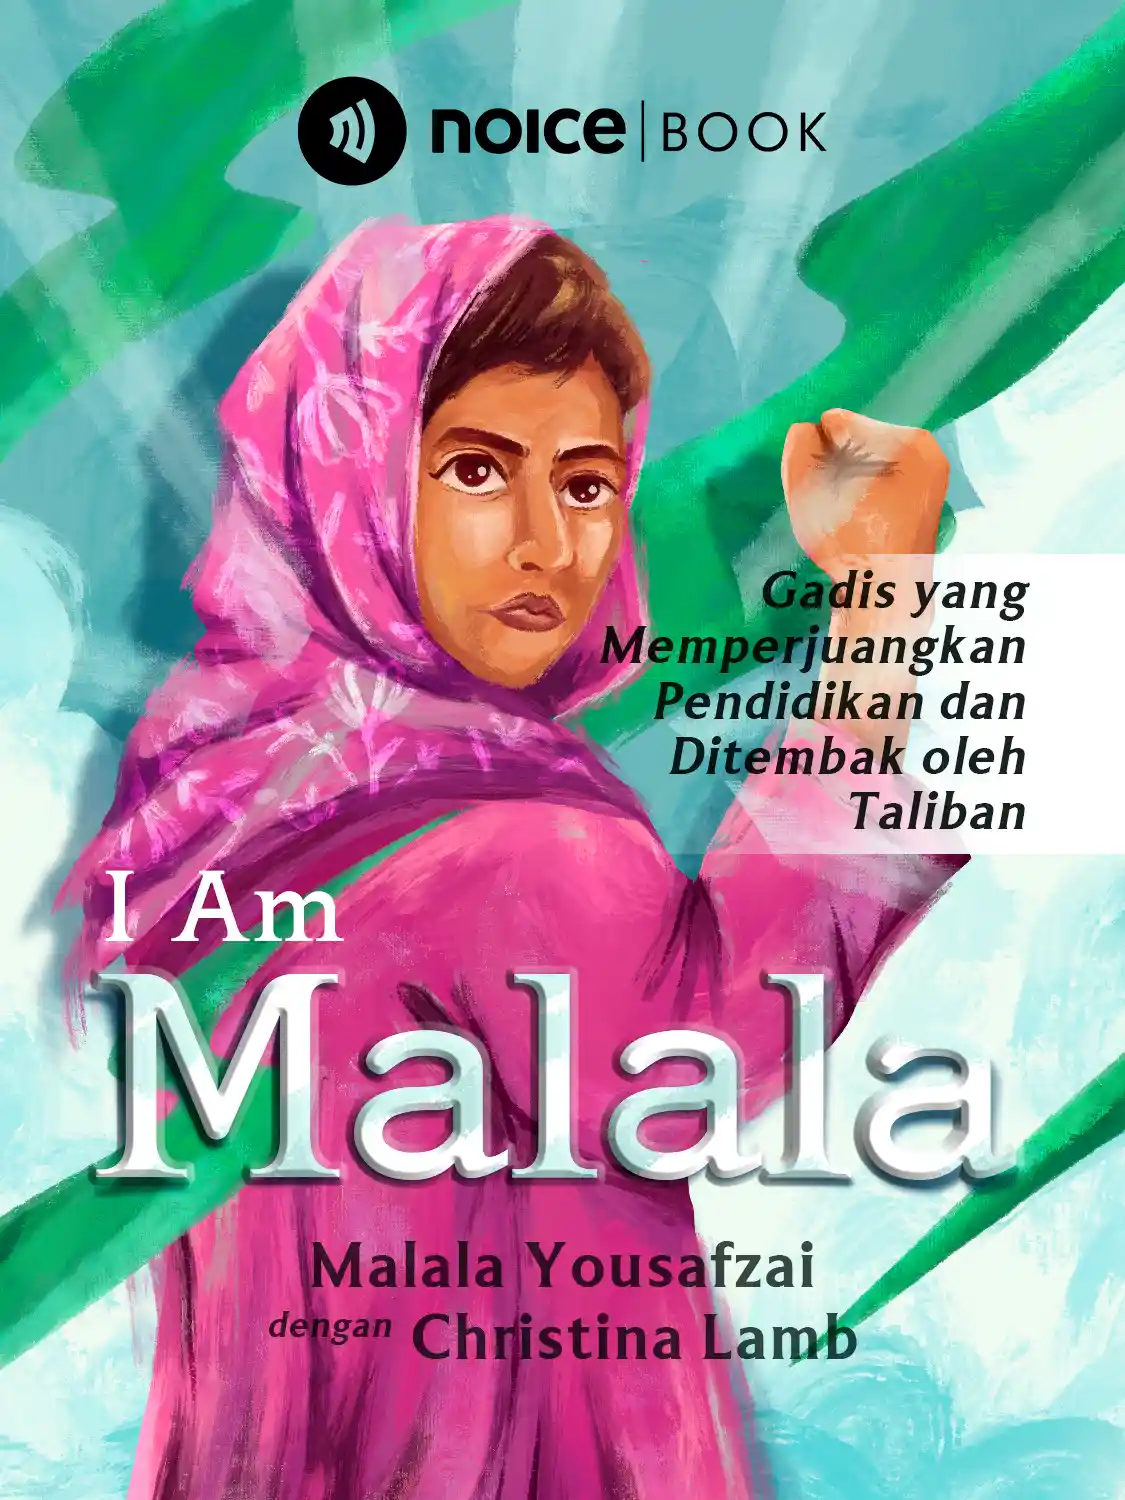 #3 Kedatangan Taliban mengancam pendidikan Malala dan murid perempuan lain